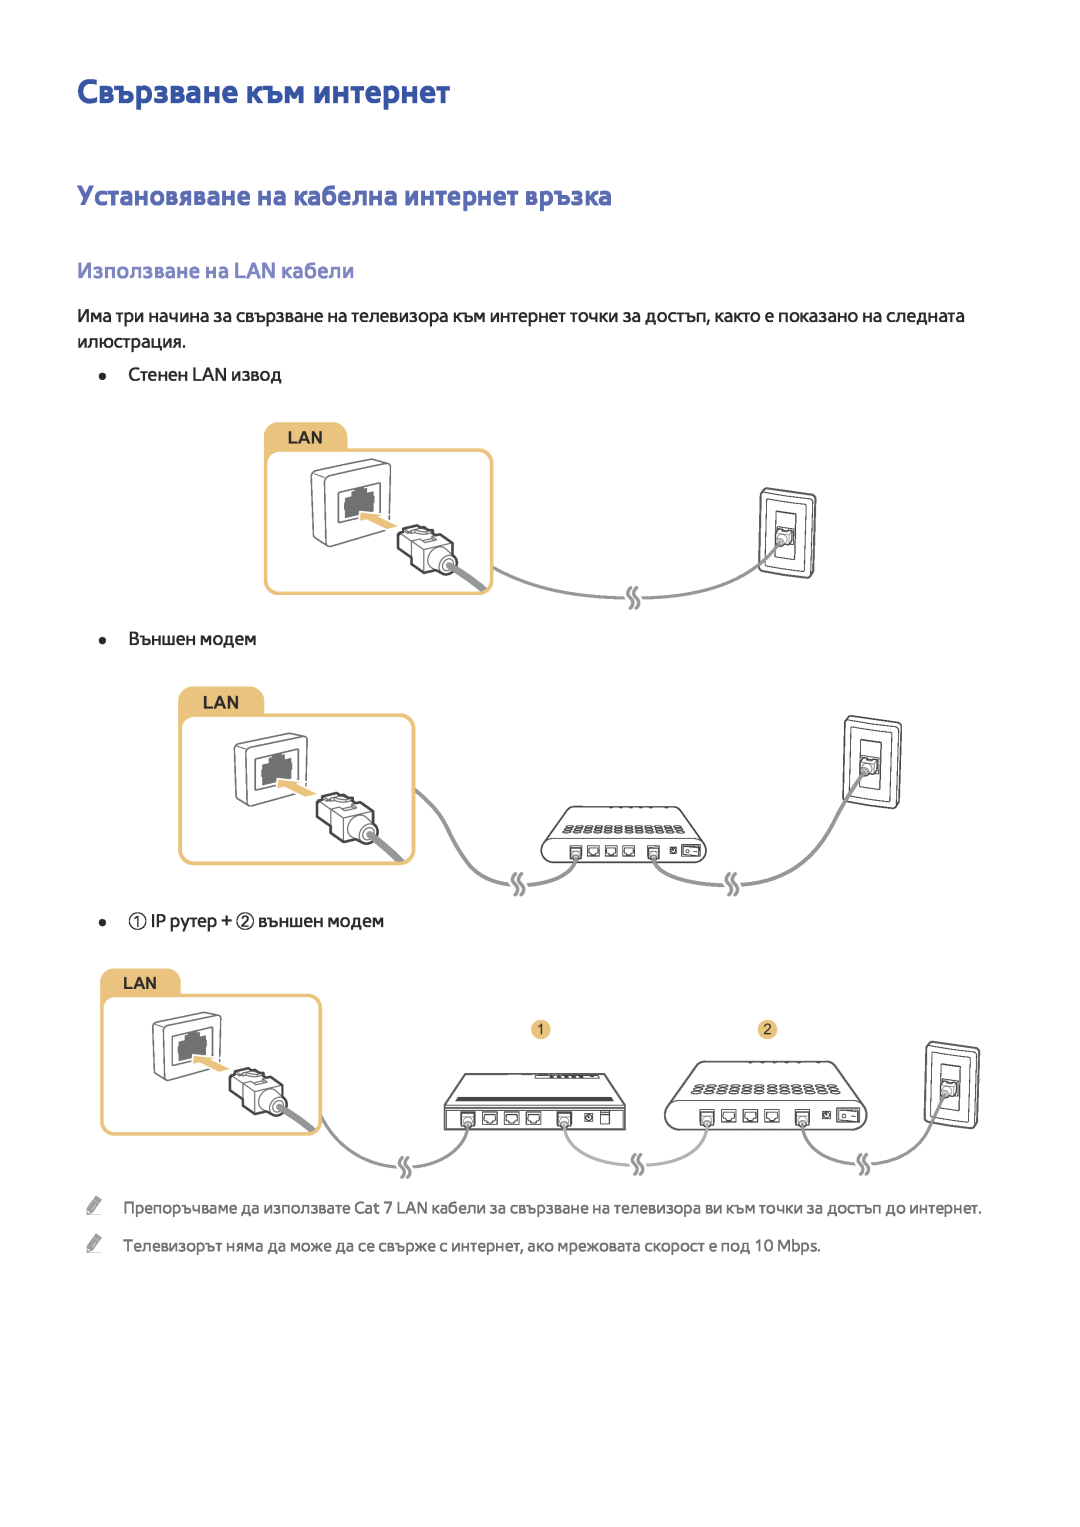 Samsung UE48JU6000WXXH manual Свързване към интернет, Установяване на кабелна интернет връзка, Използване на LAN кабели 